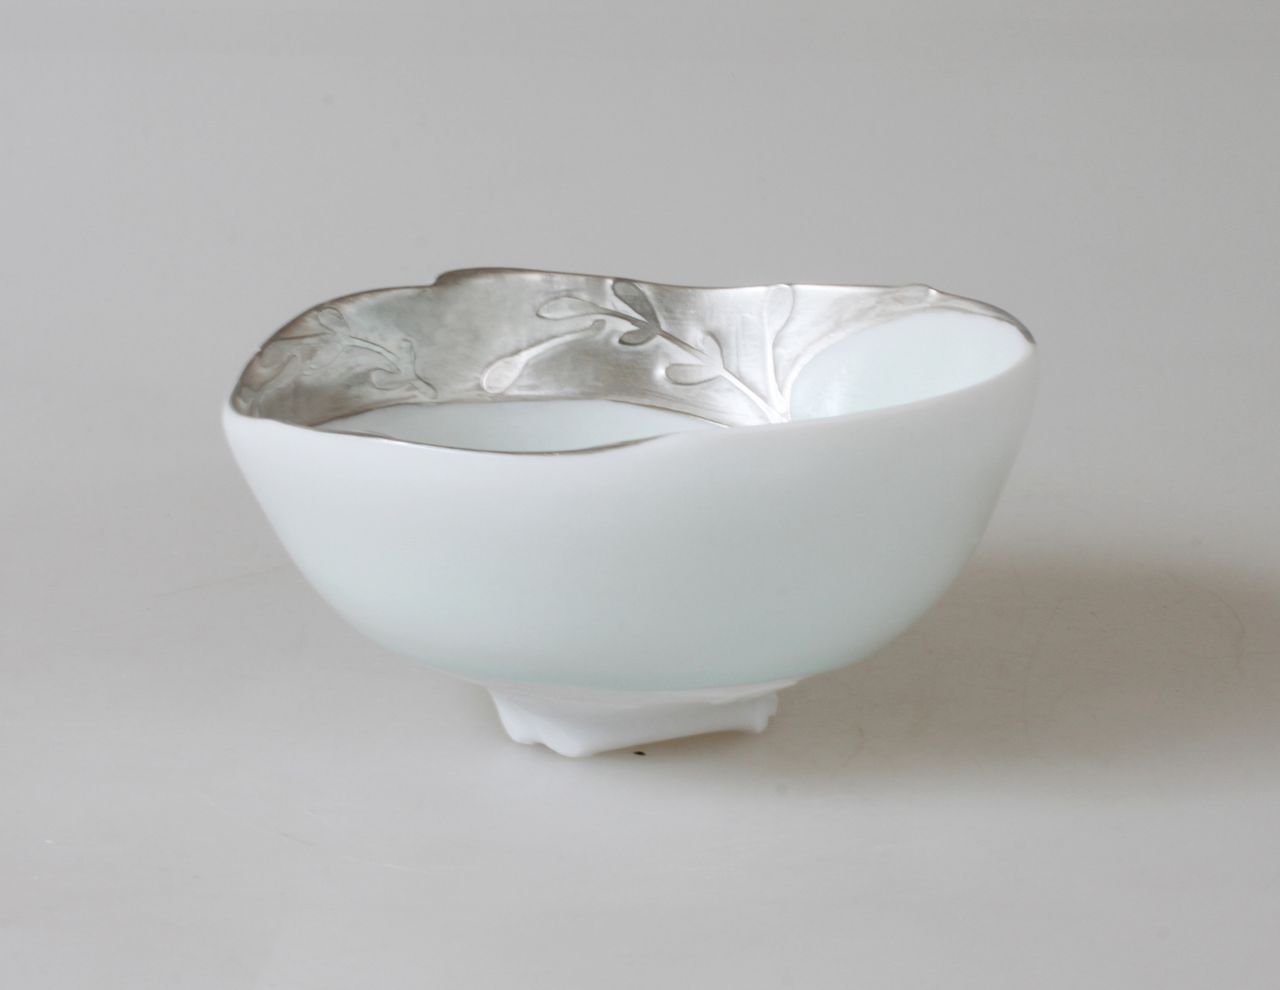 《銀白風景》（白瓷・影青釉・銀彩）。鍾雯婷於金澤卯辰山工藝工房製作的茶碗